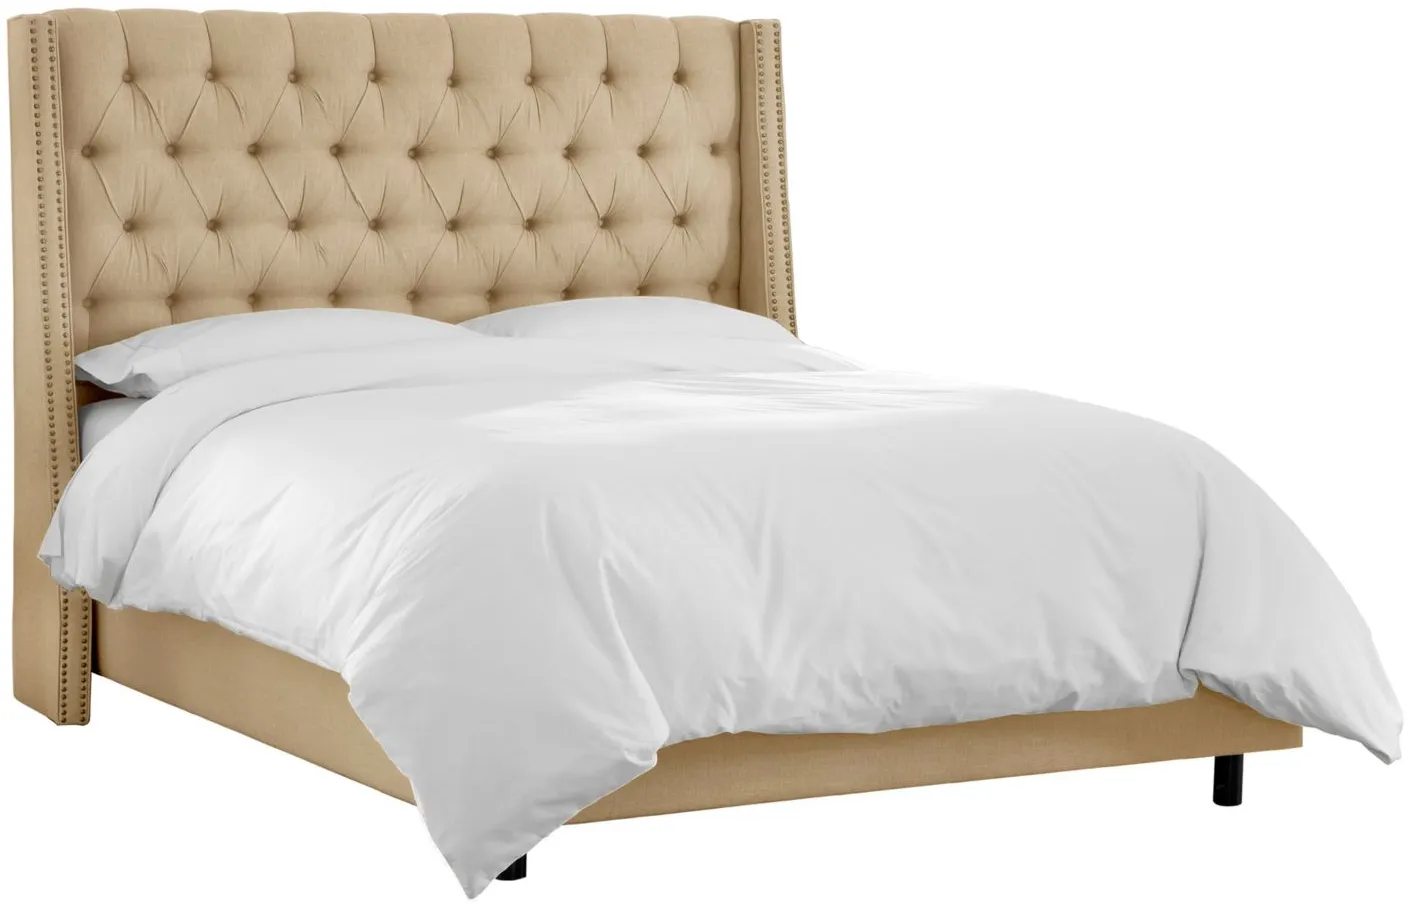 Sheridan Wingback Bed in Linen Sandstone by Skyline